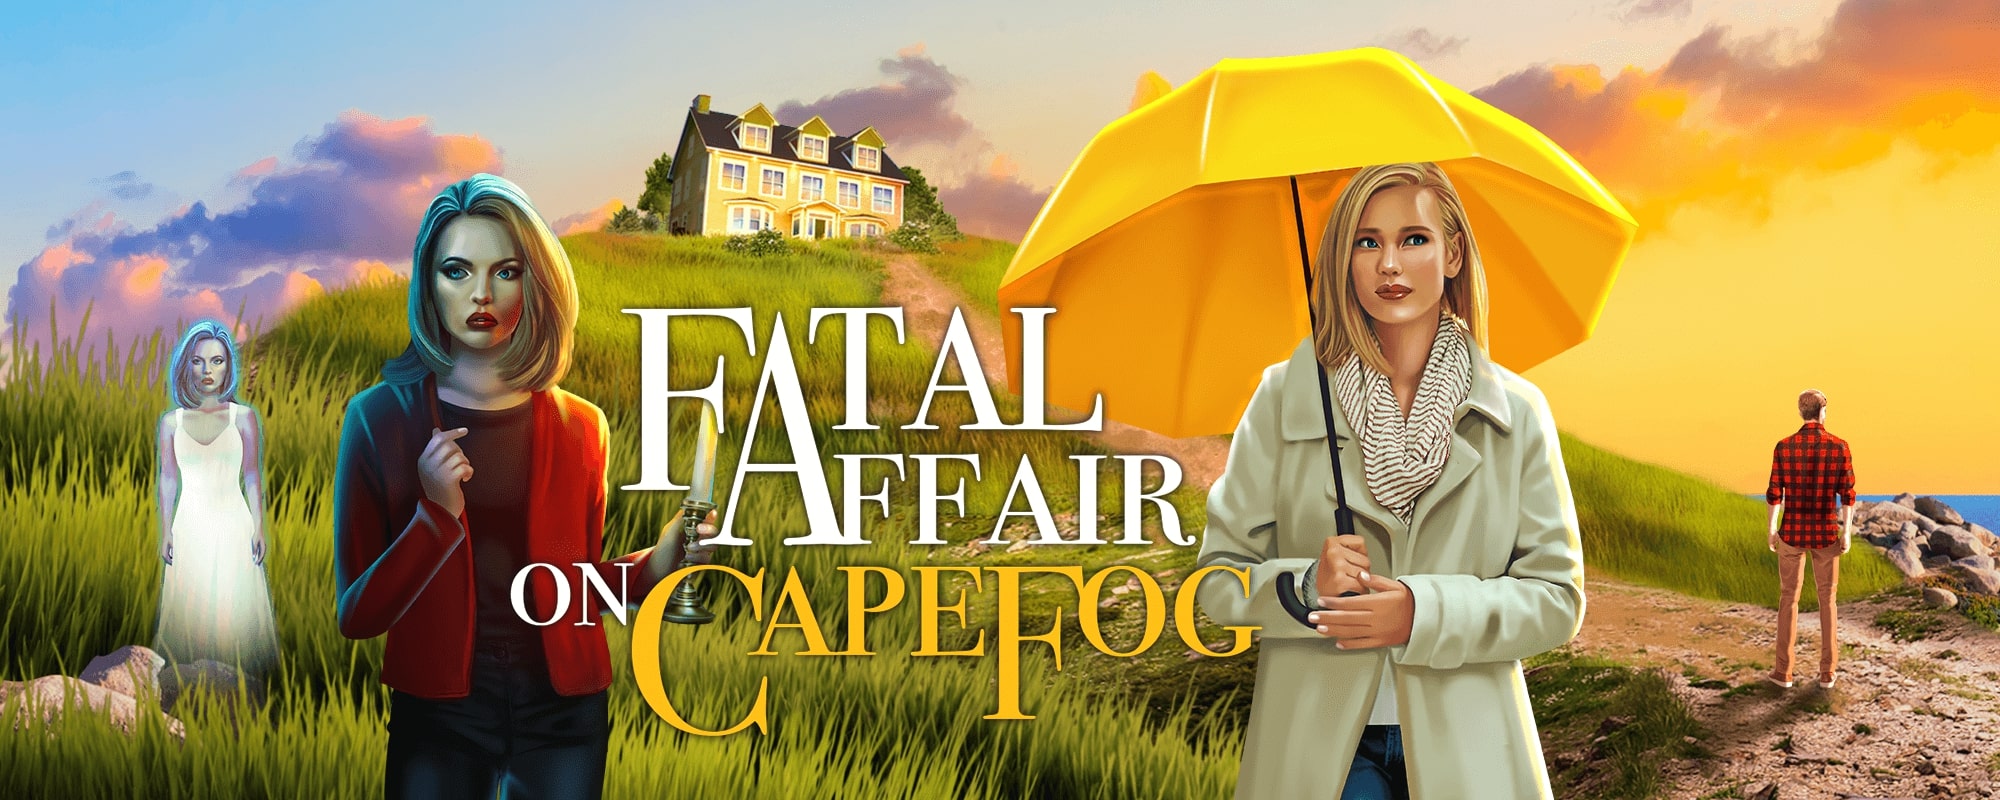 Fatal Affair On Cape Fog